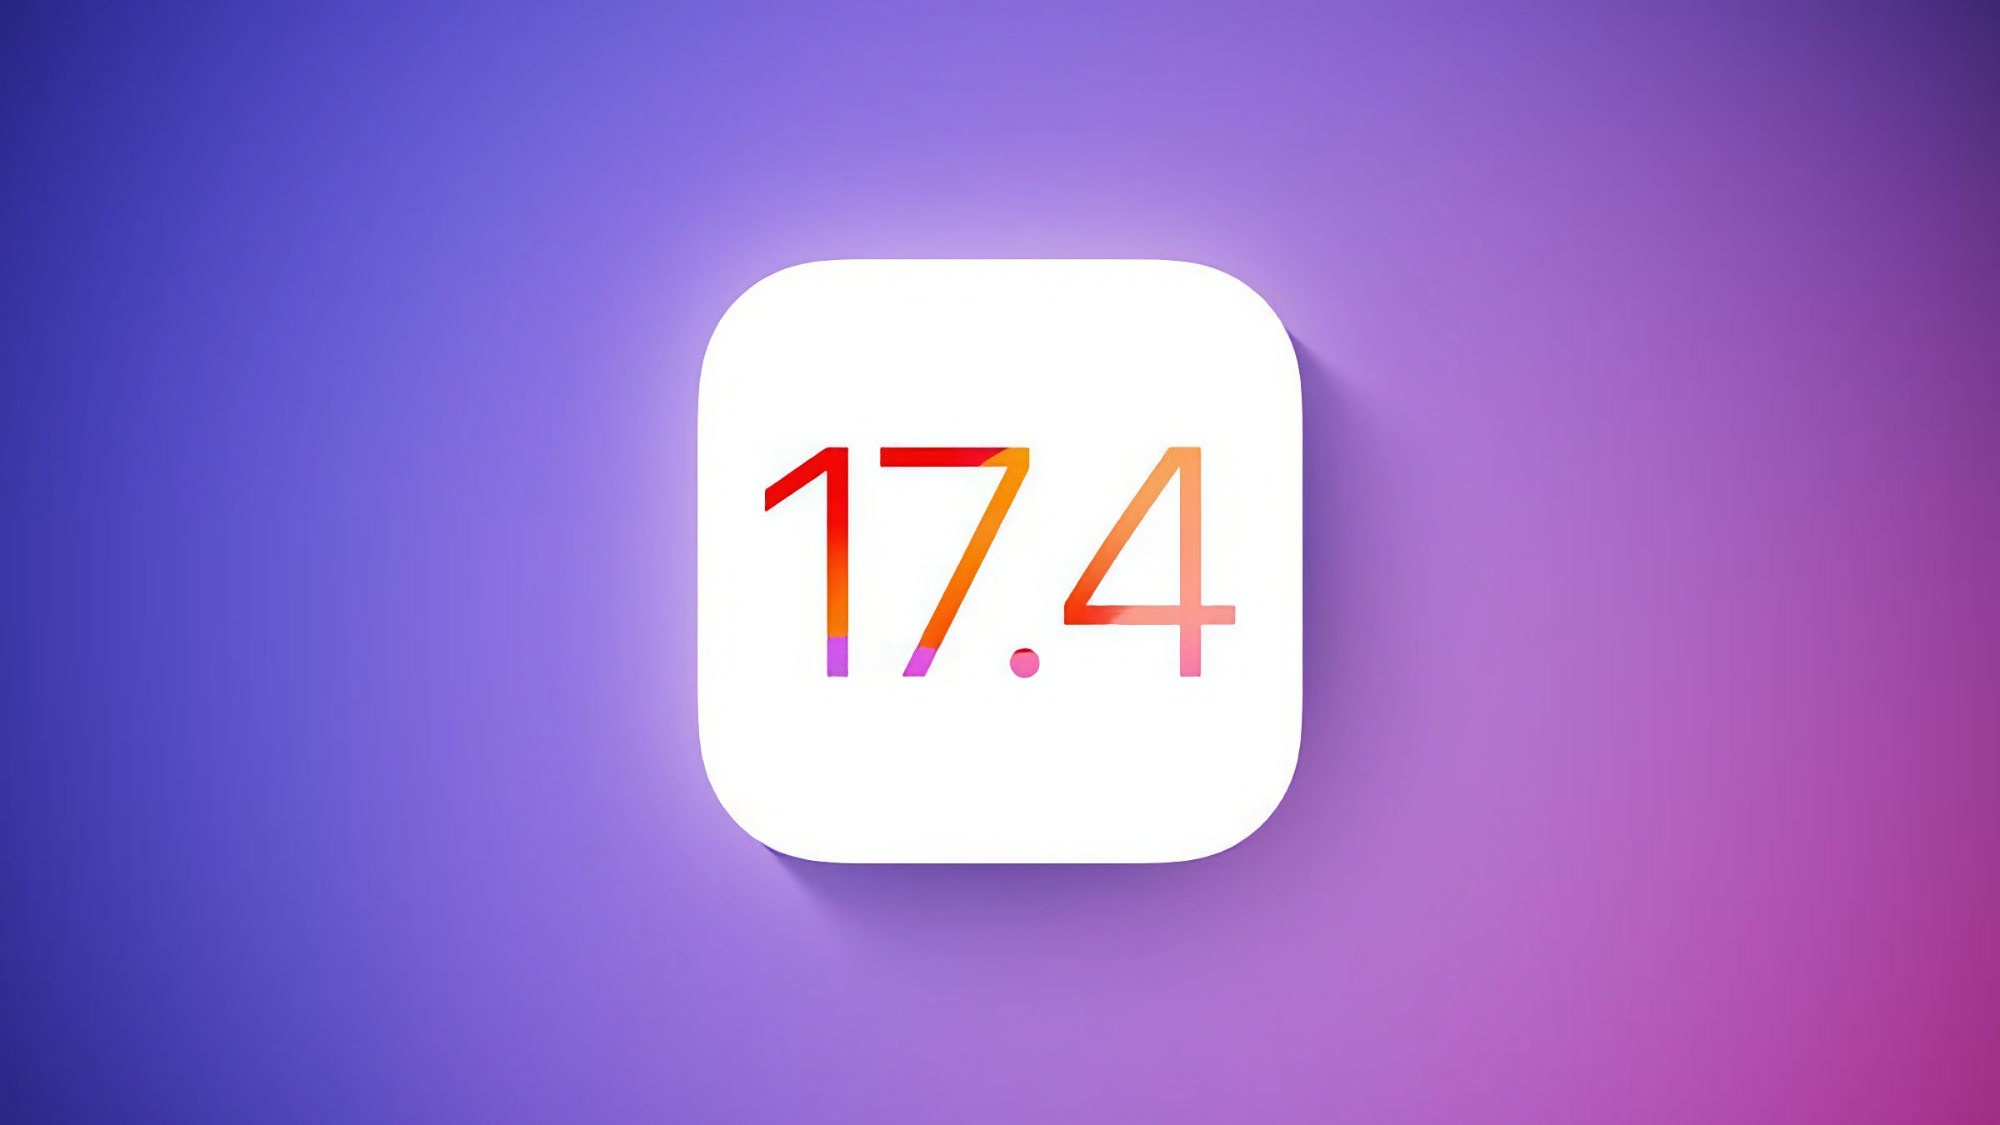 Apple annonce la version bêta d'iOS 17.4 : quelles sont les nouveautés ?